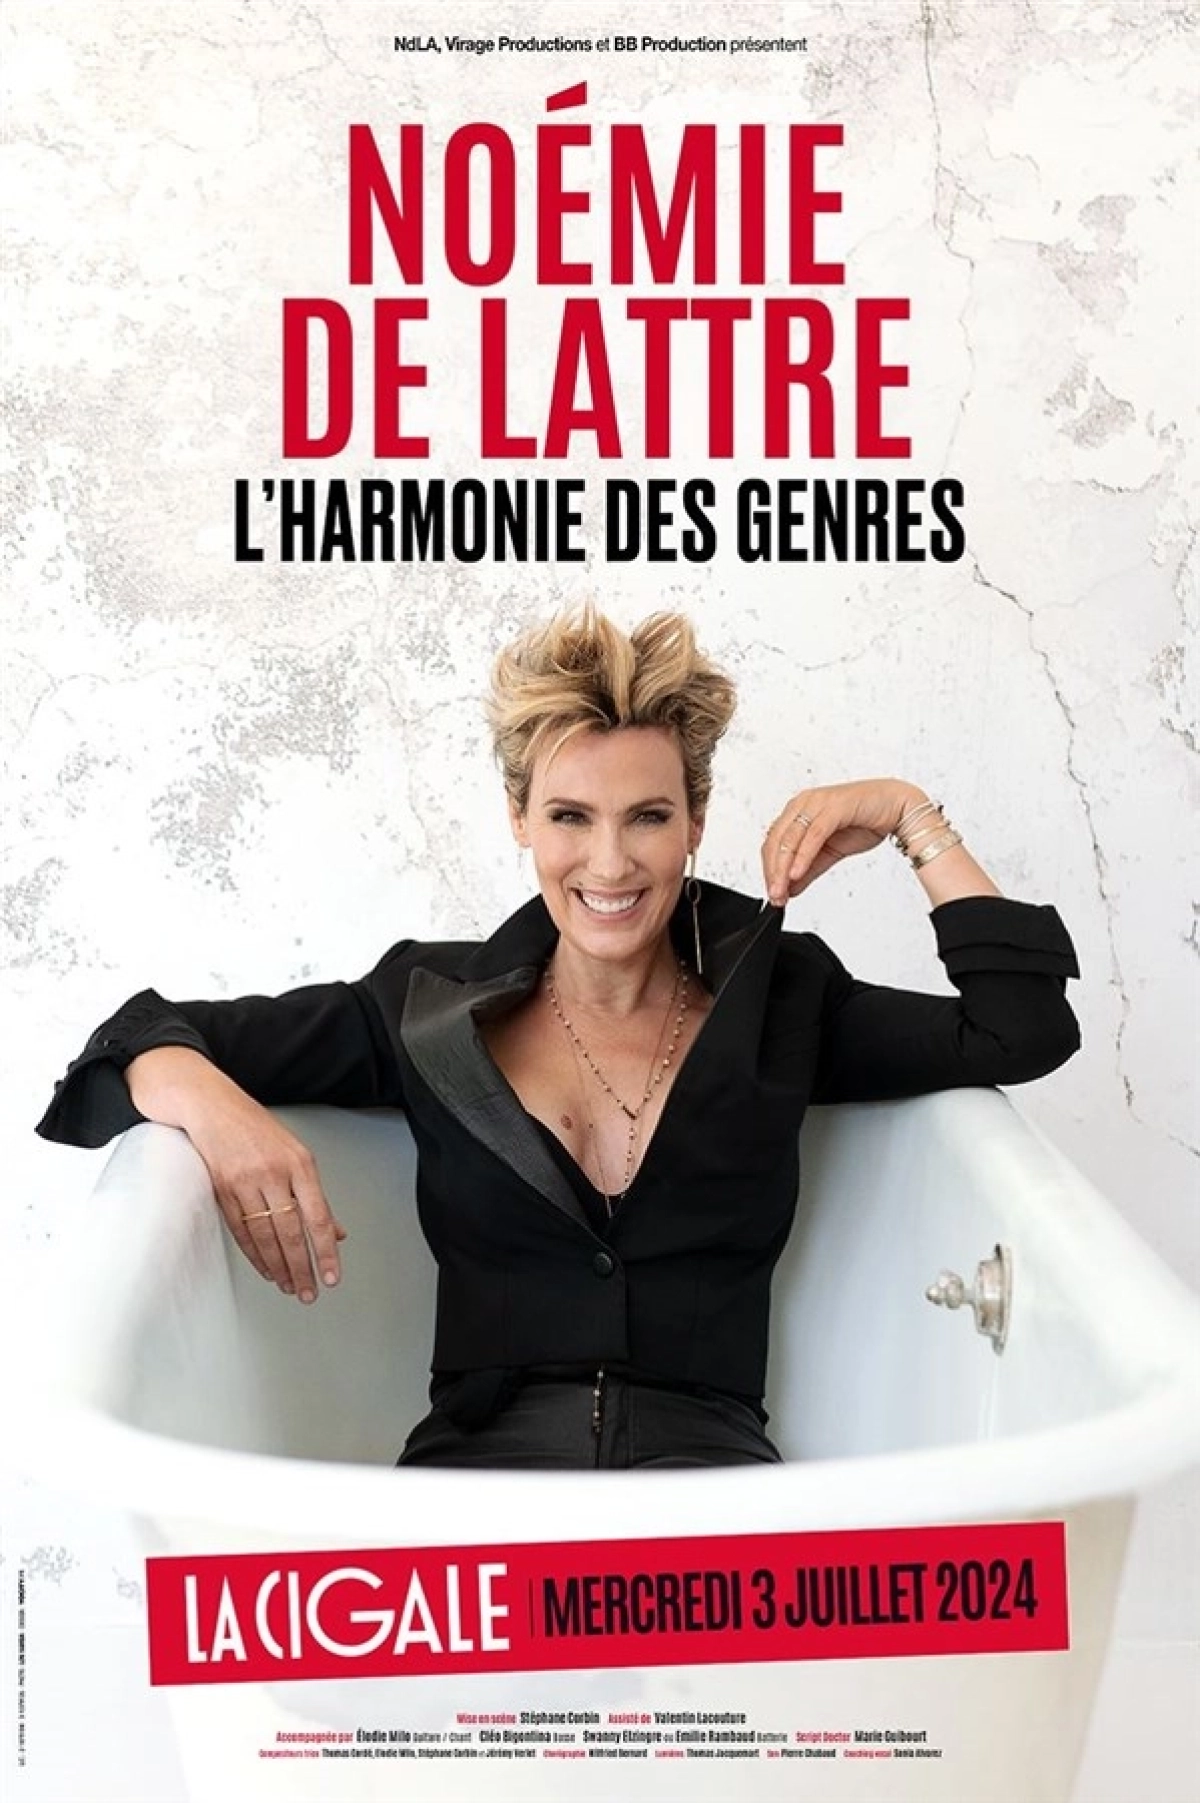 Noémie de Lattre at La Cigale Tickets